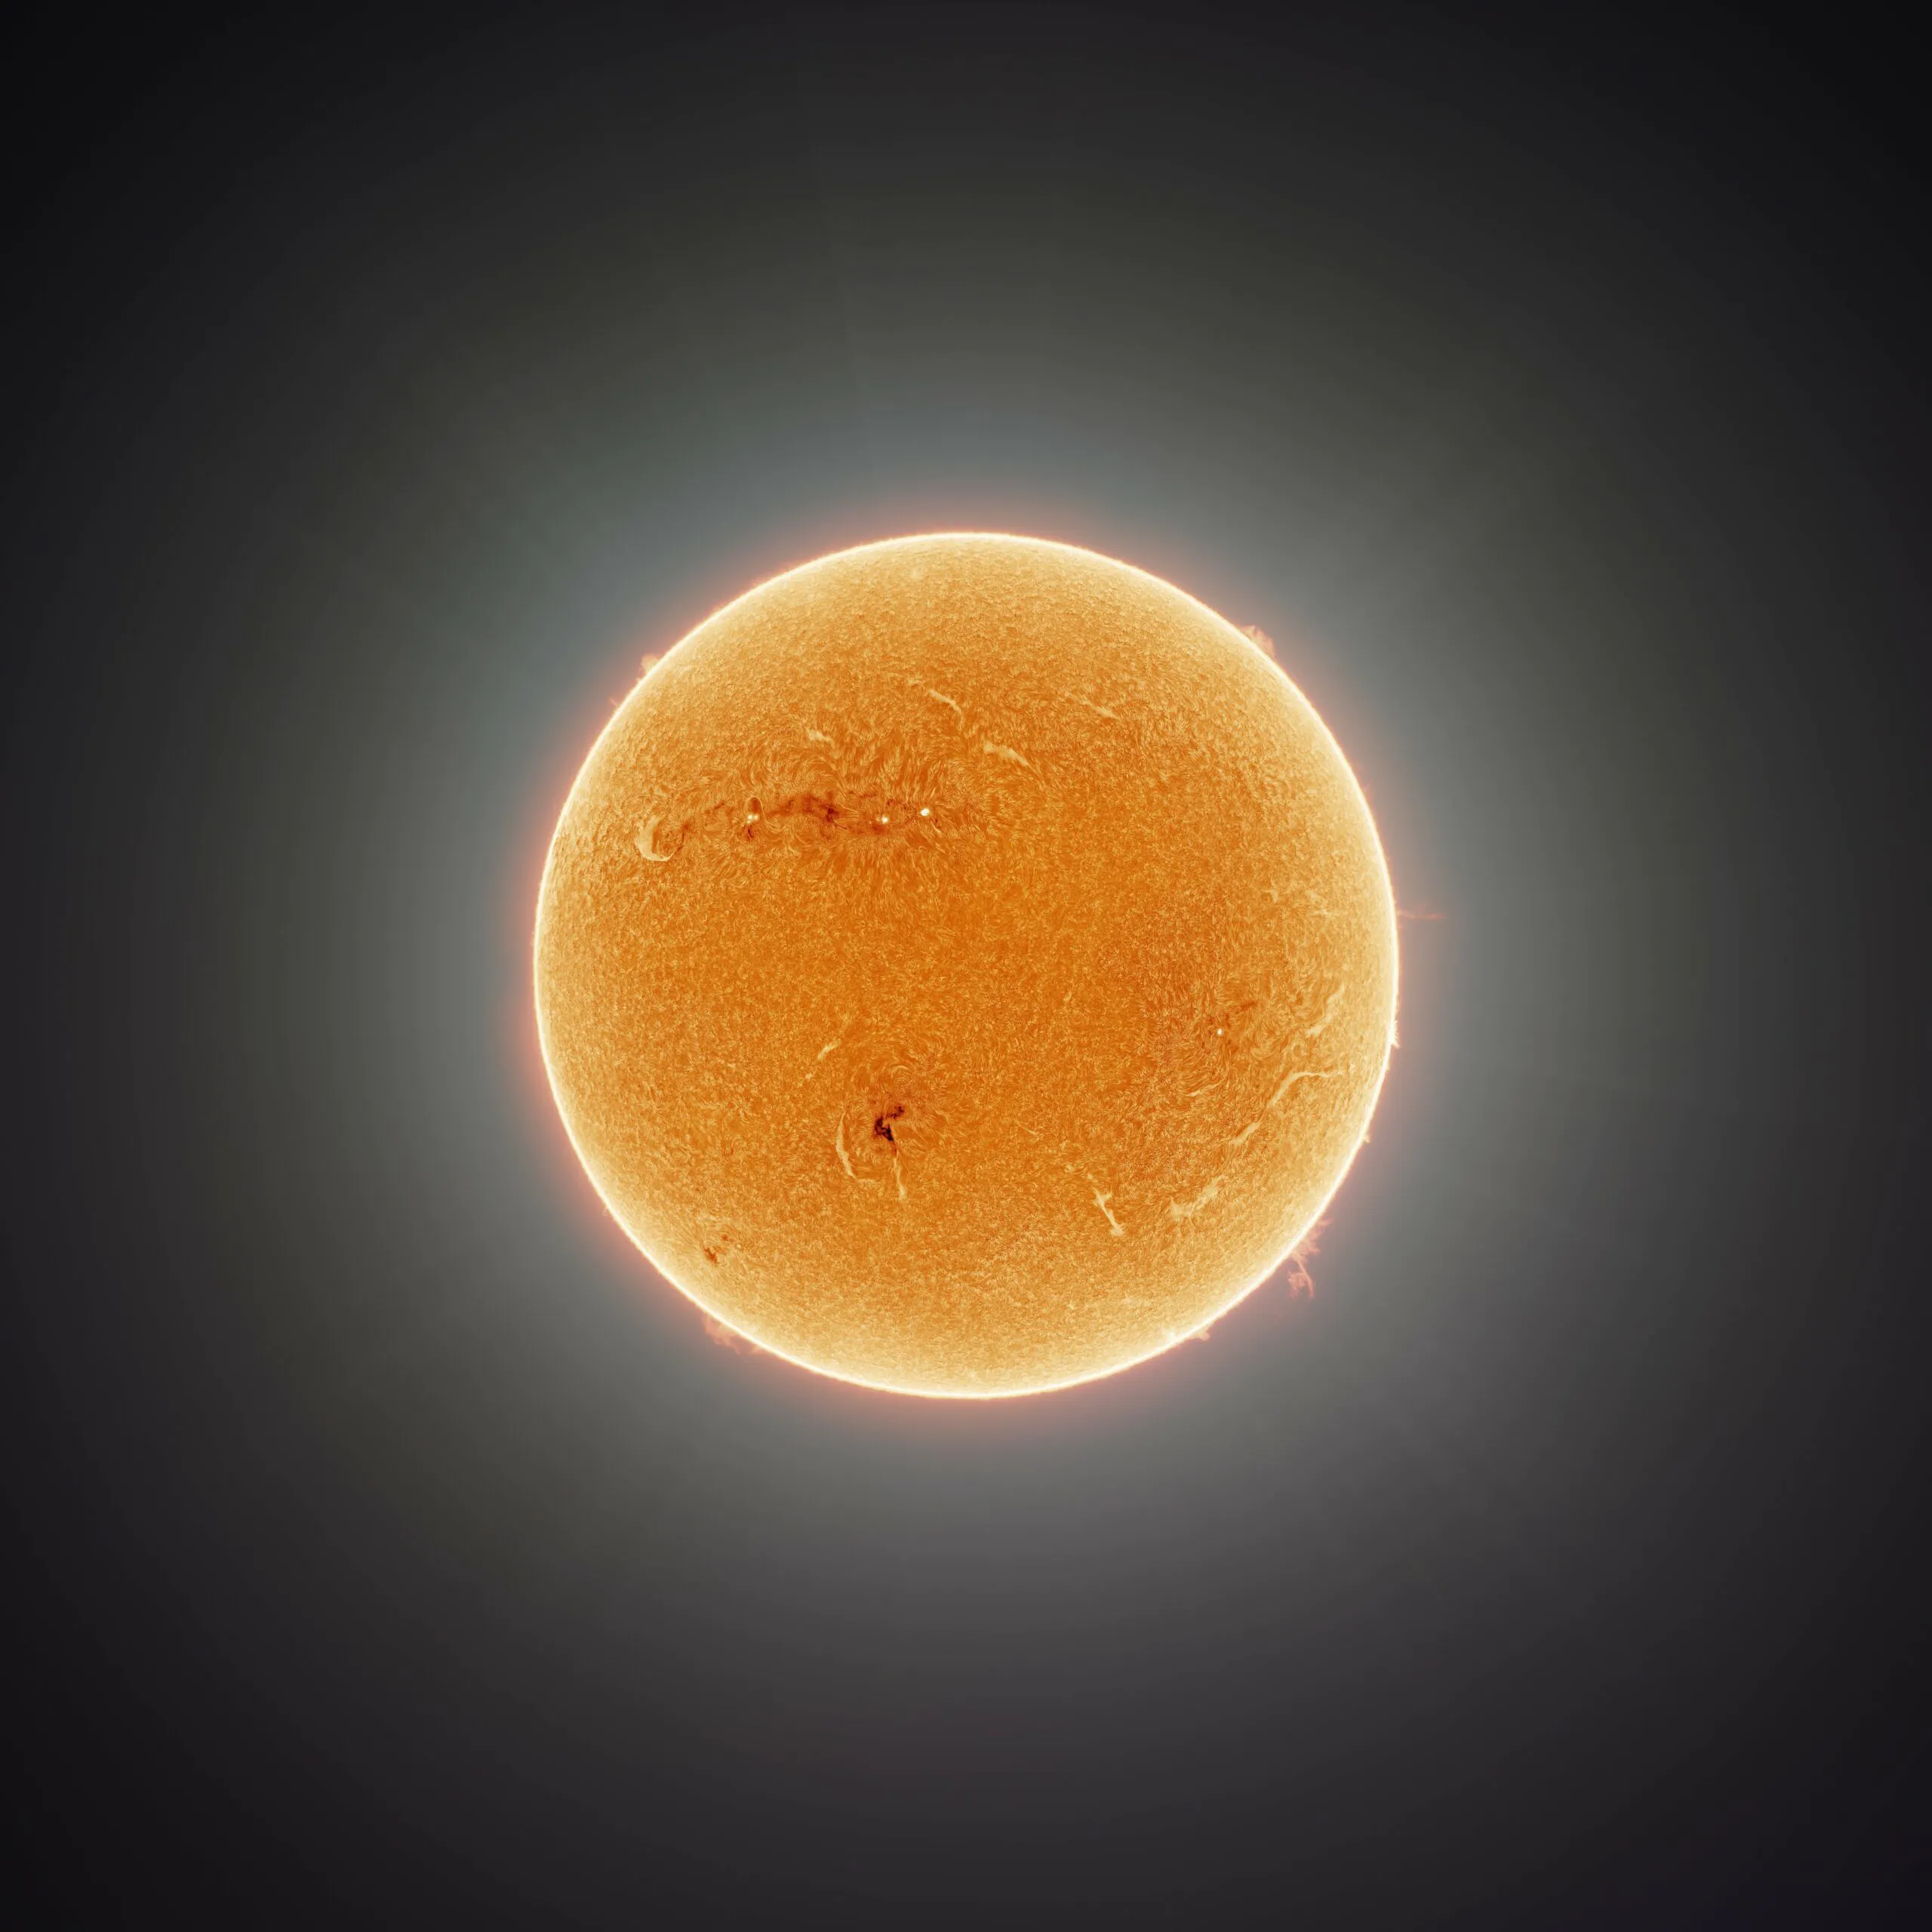 Het meest gedetailleerde portret van de zon met 164 miljoen pixels is vrijgegeven